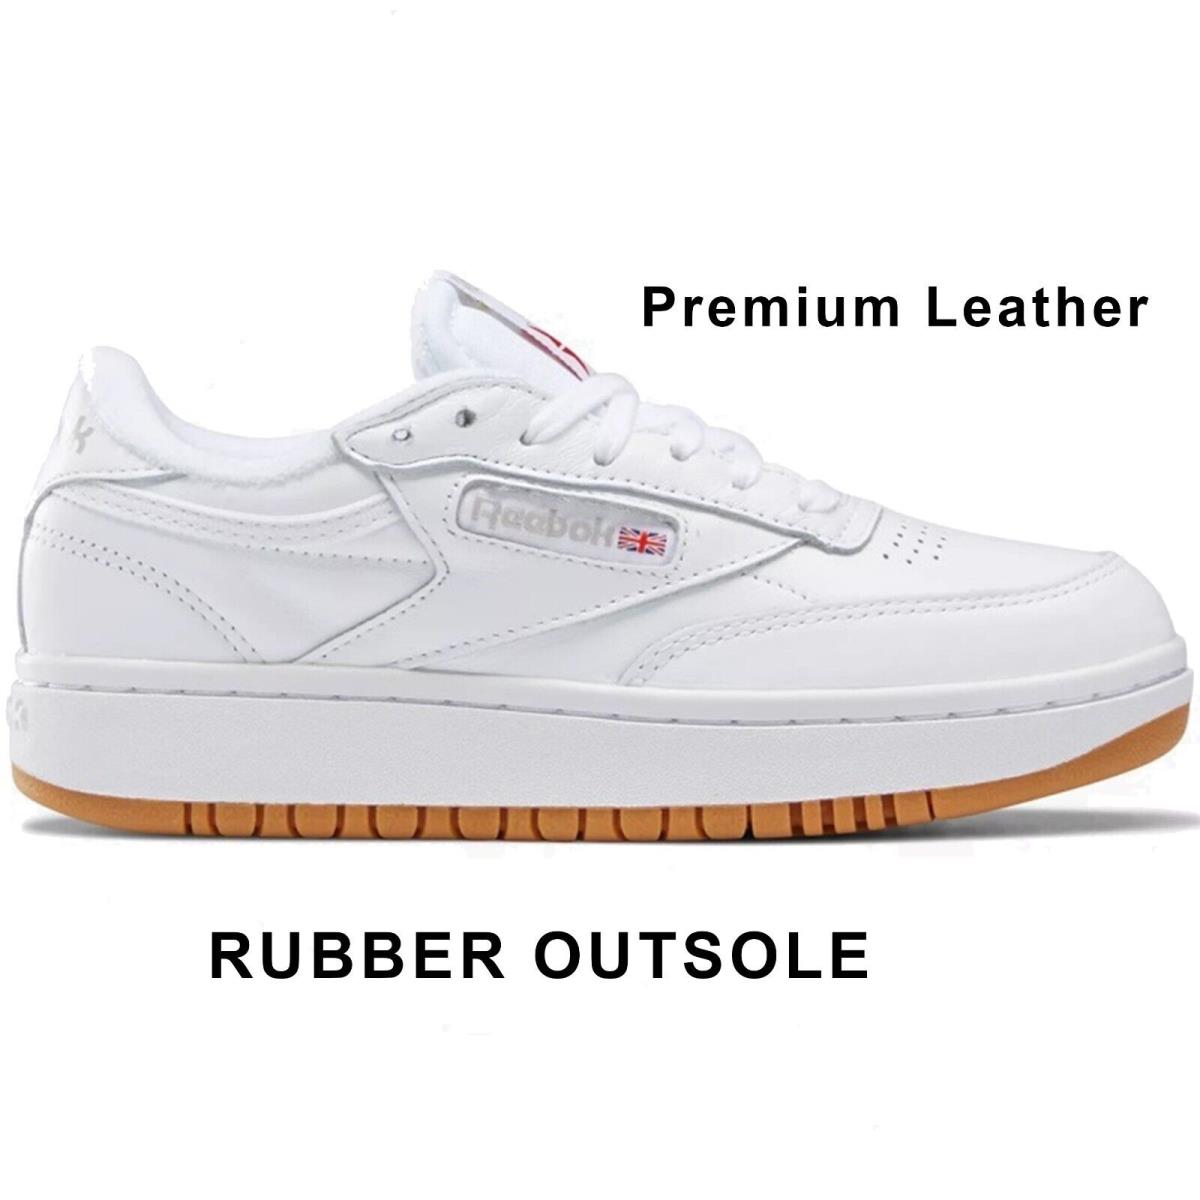 Reebok Women`s Platform Club C Double Shoes Premium Leather Rubber Outsole